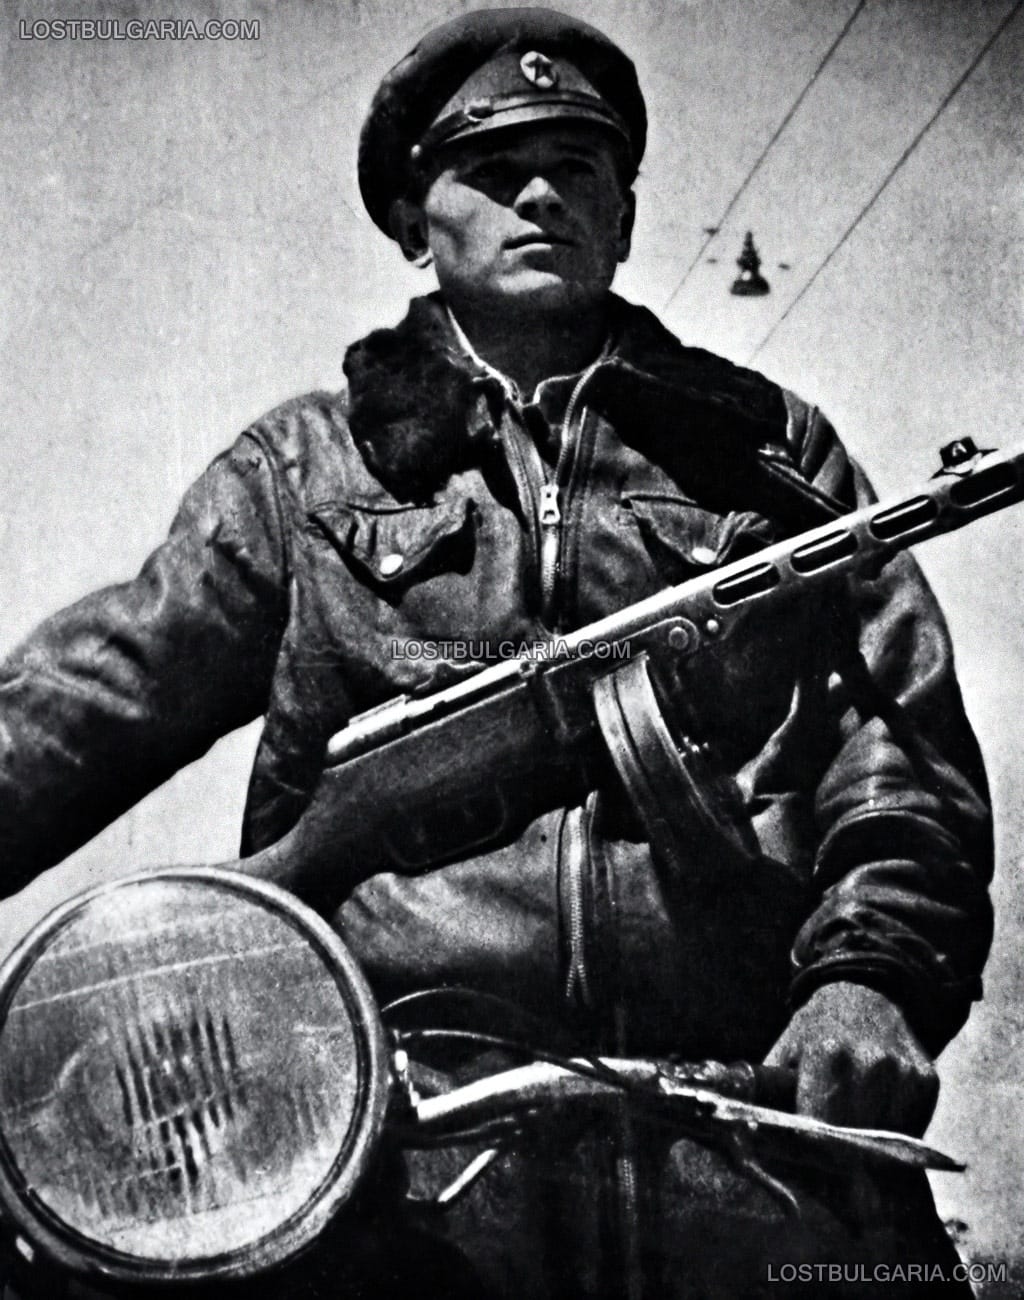 Моторизиран милиционер с автомат "Шпагин", 50-те години на ХХ век